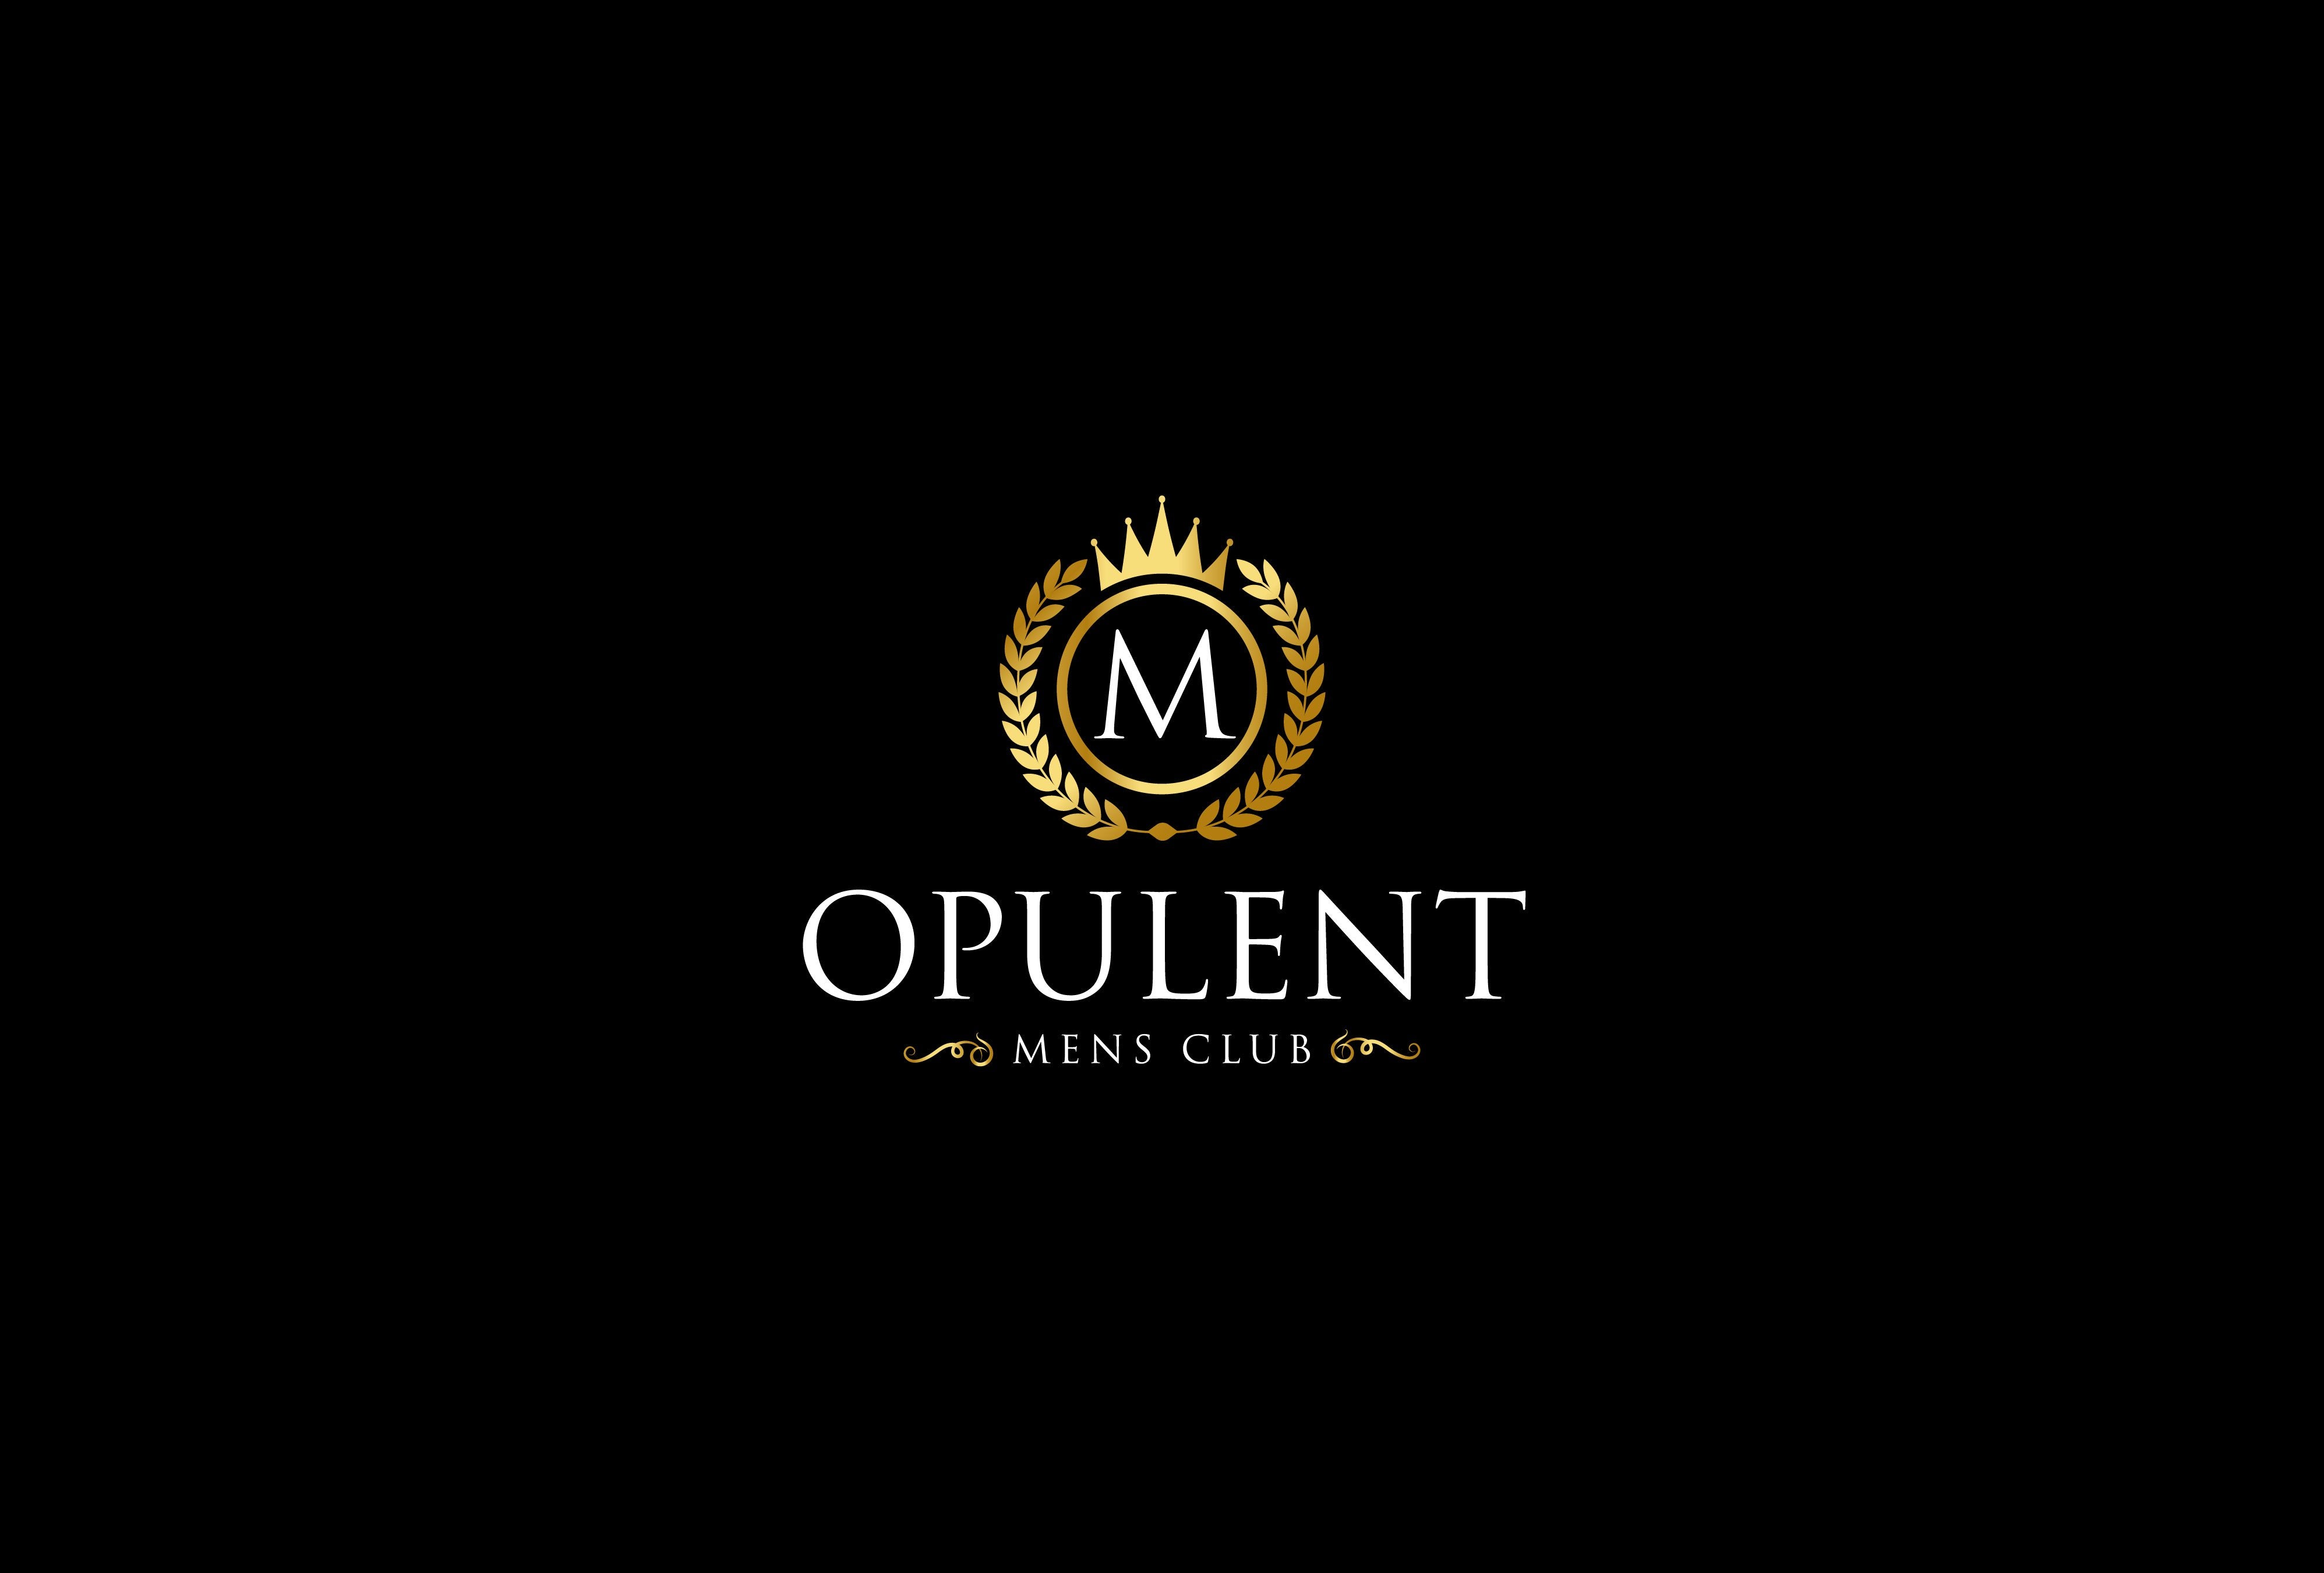 The Opulent Mens Club